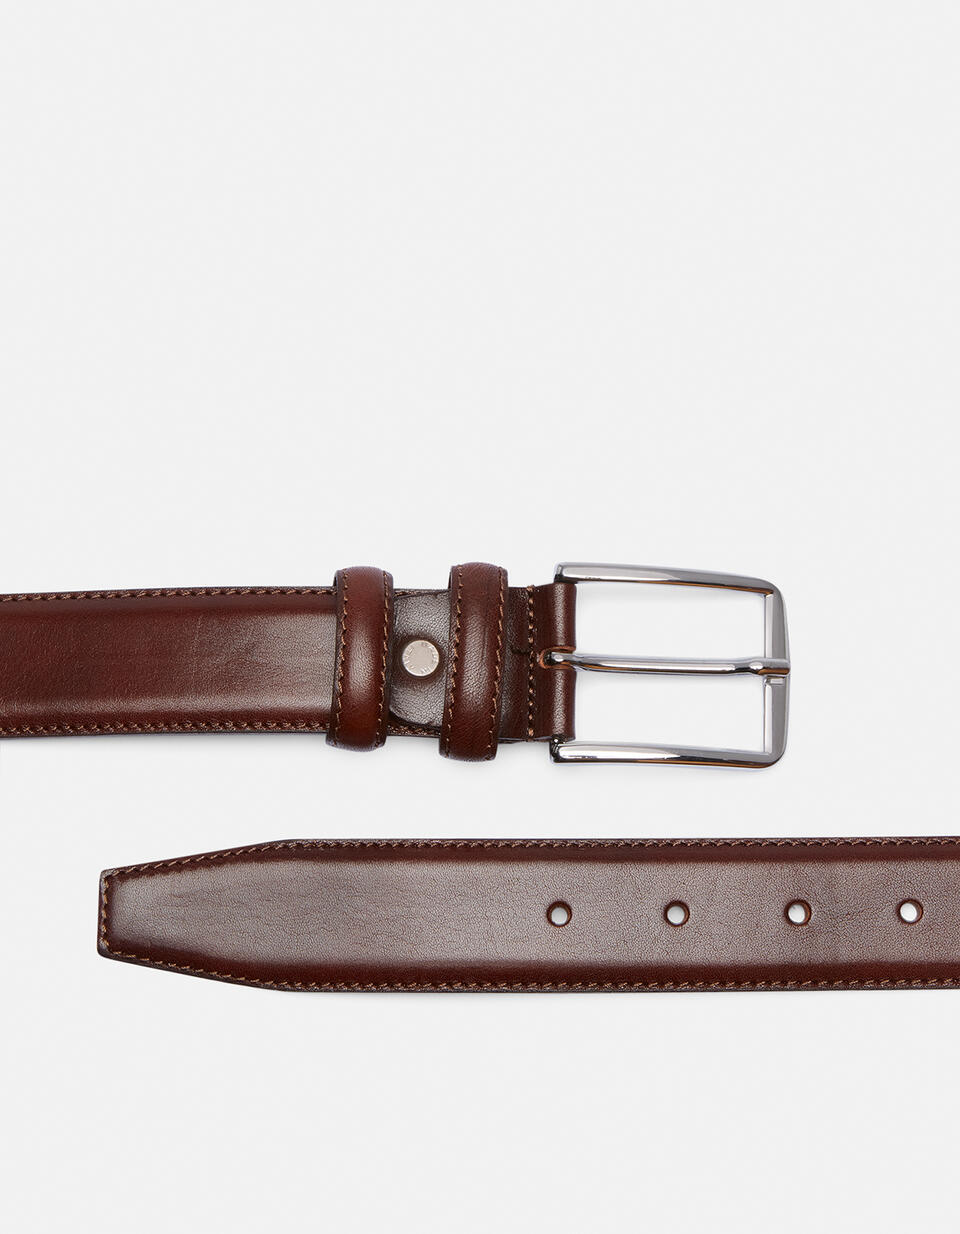 Cintura Elegante in Pelle 3,5 cm  - Cinture Uomo - Cinture - Cuoieria Fiorentina